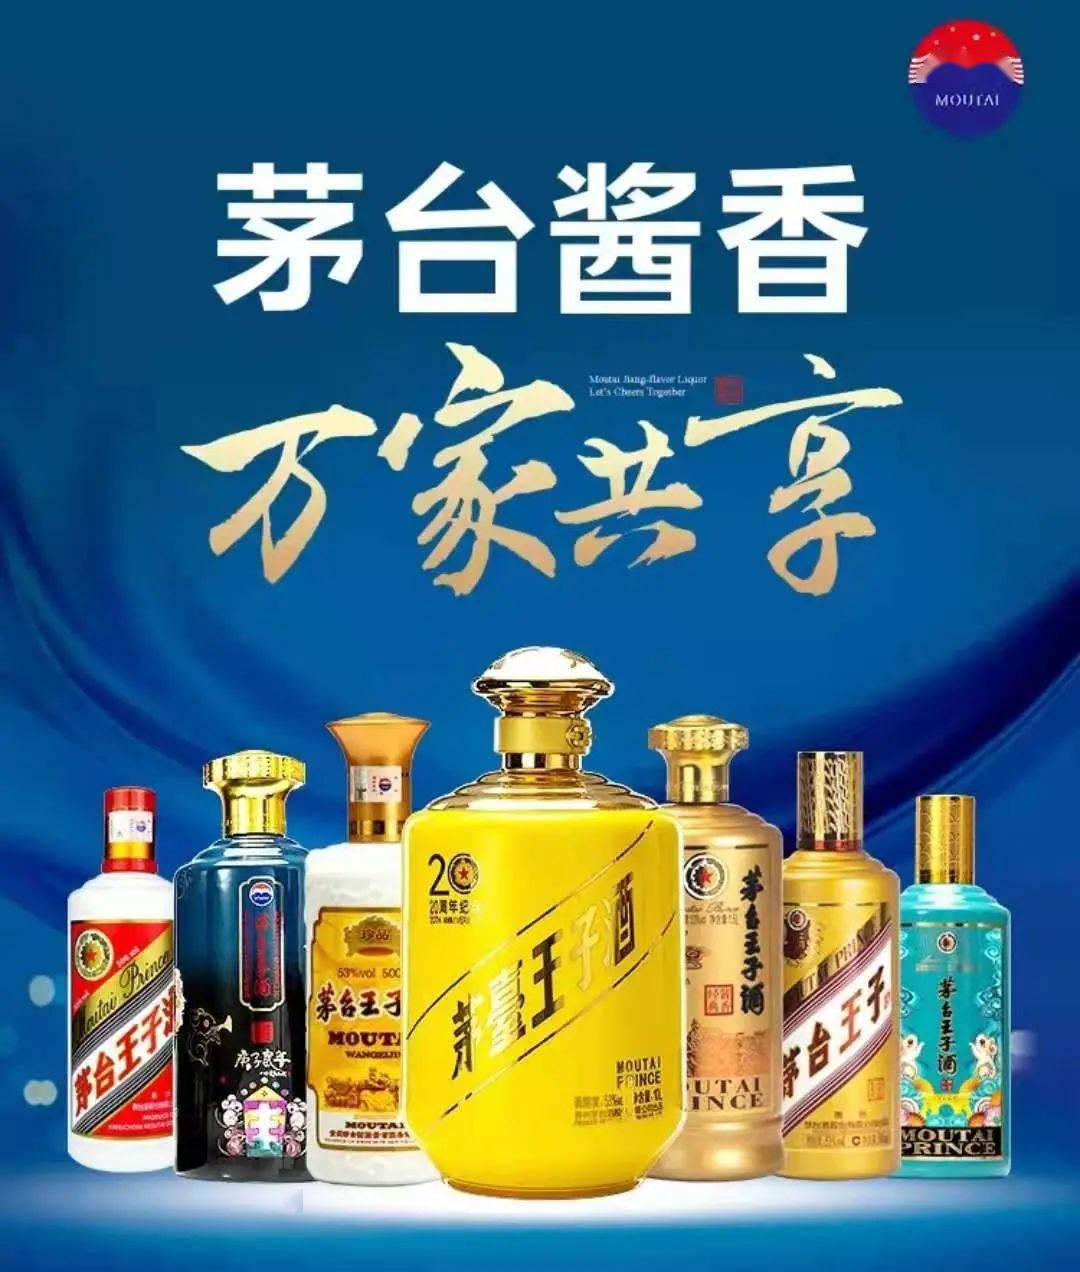 茅台王子酒广告语经典图片